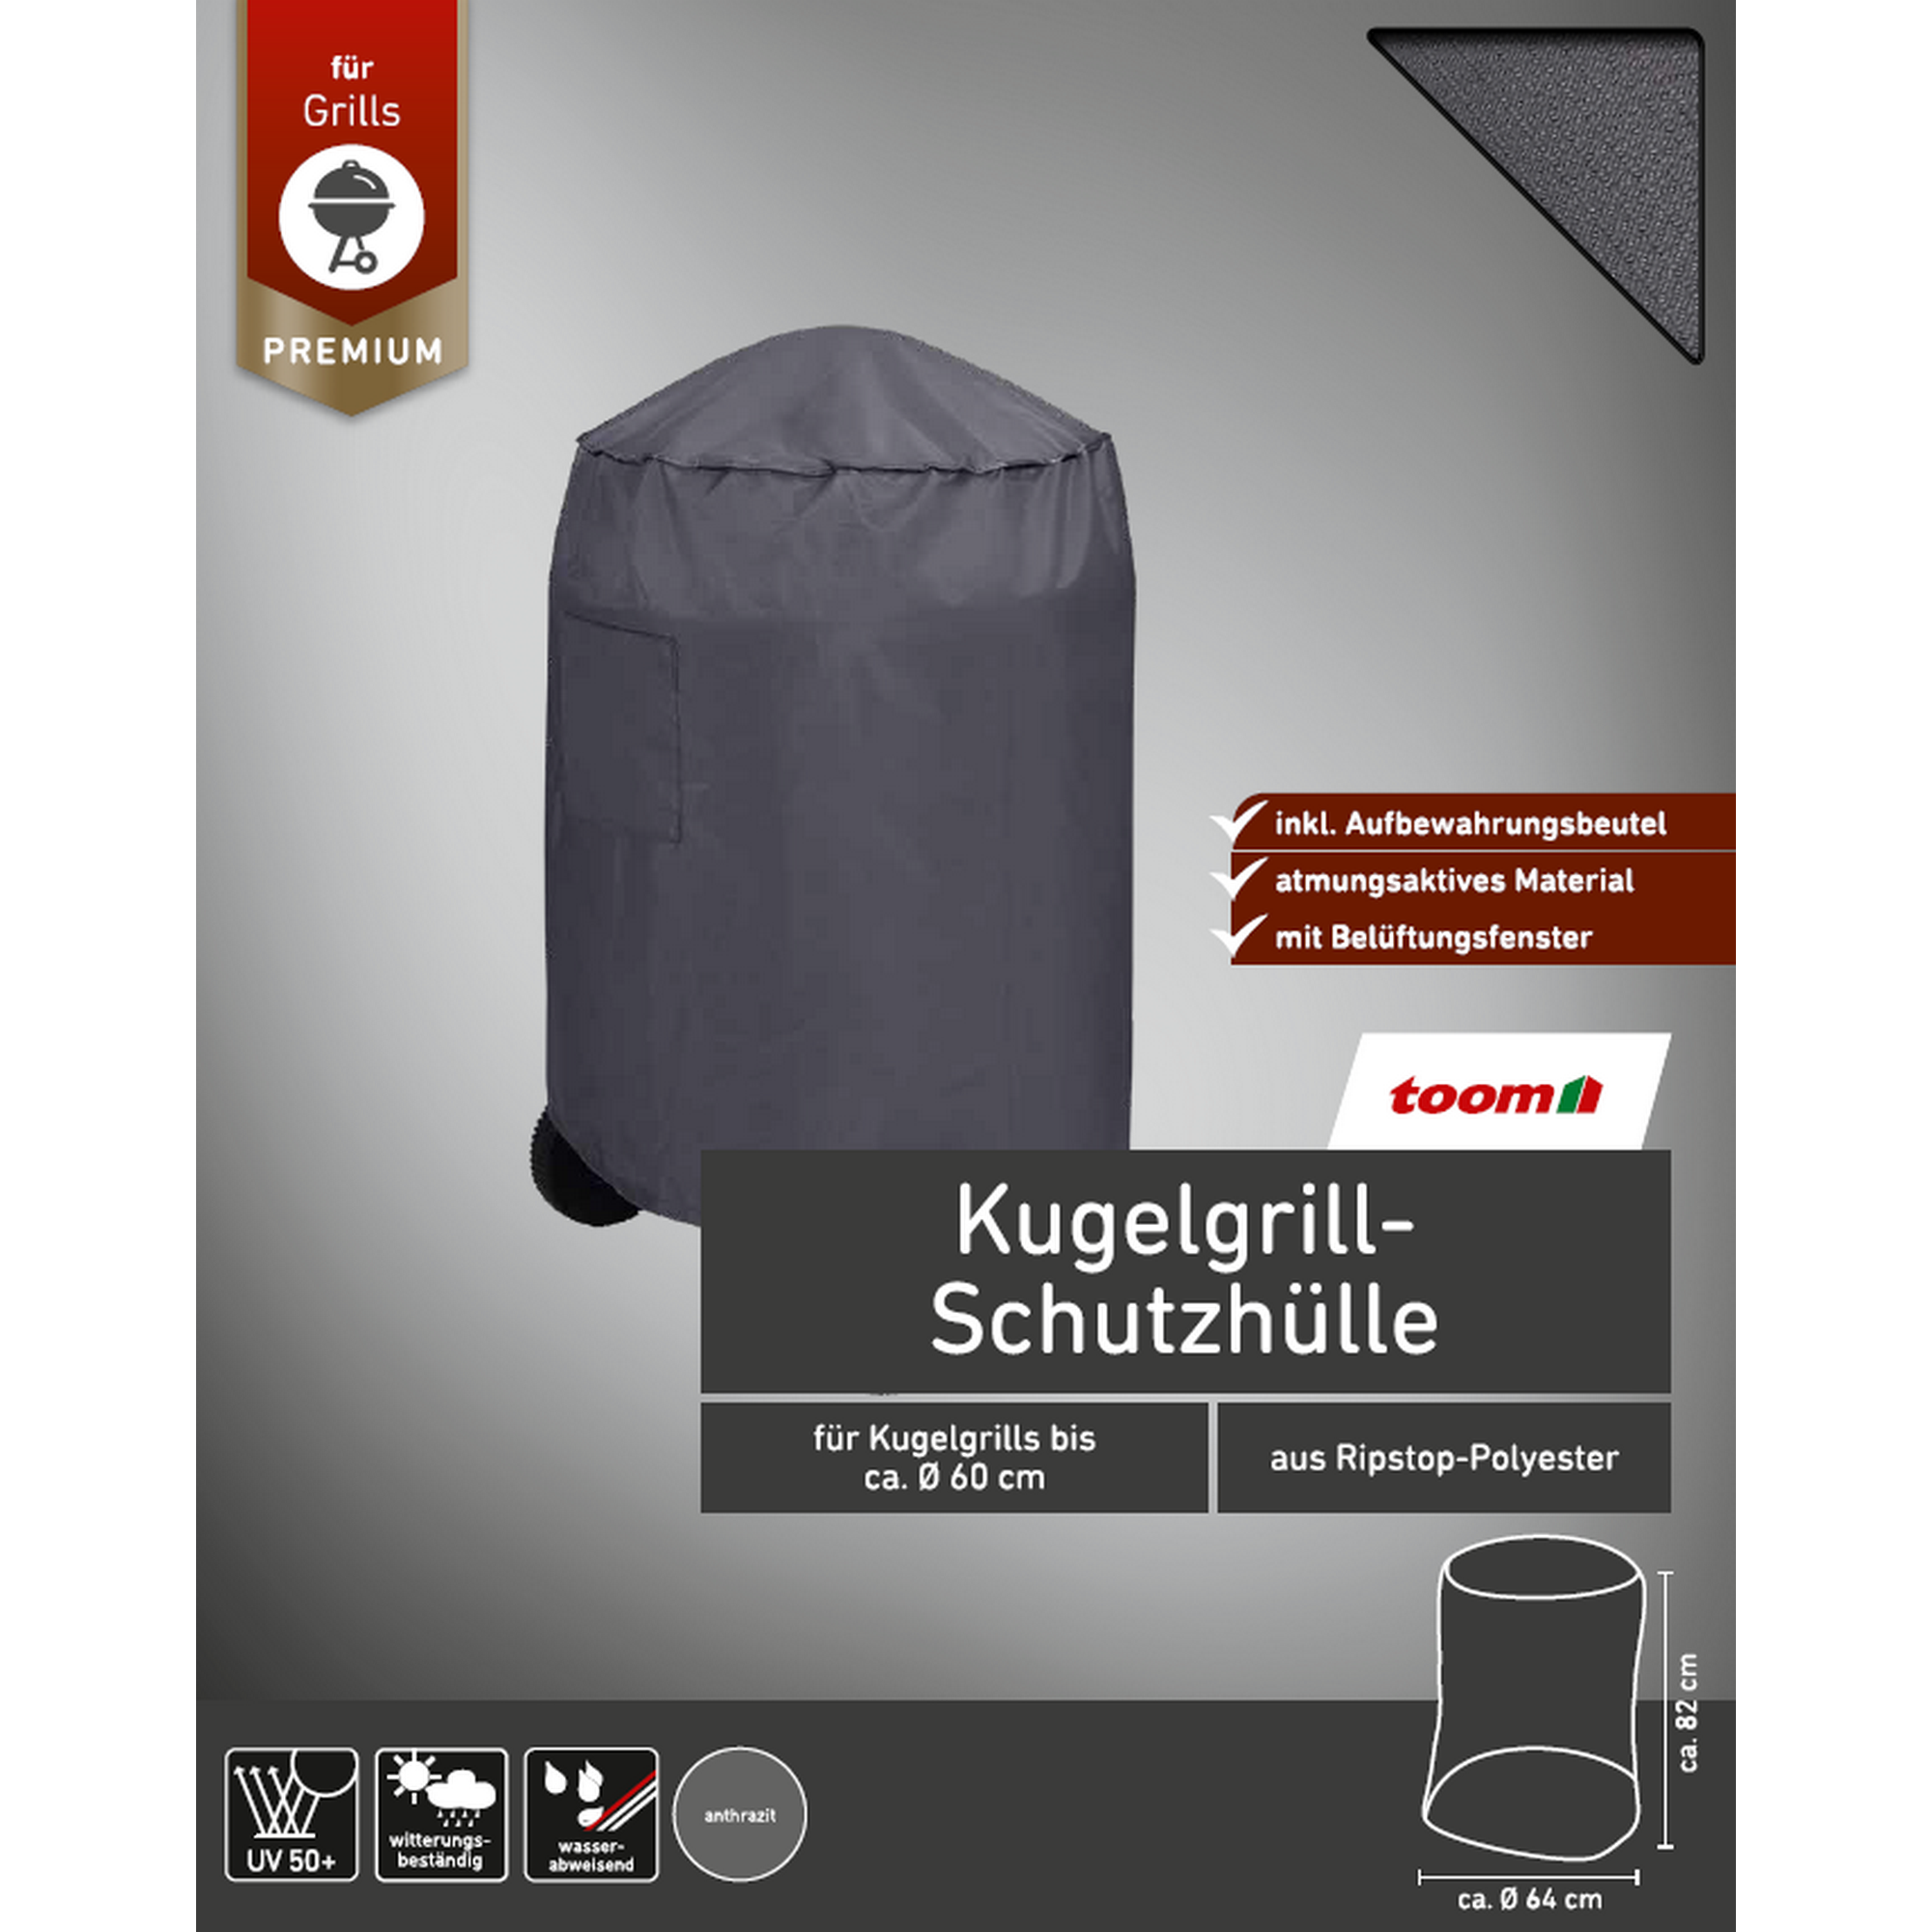 Premium-Schutzhülle für Kugelgrills bis Ø 60 cm + product picture